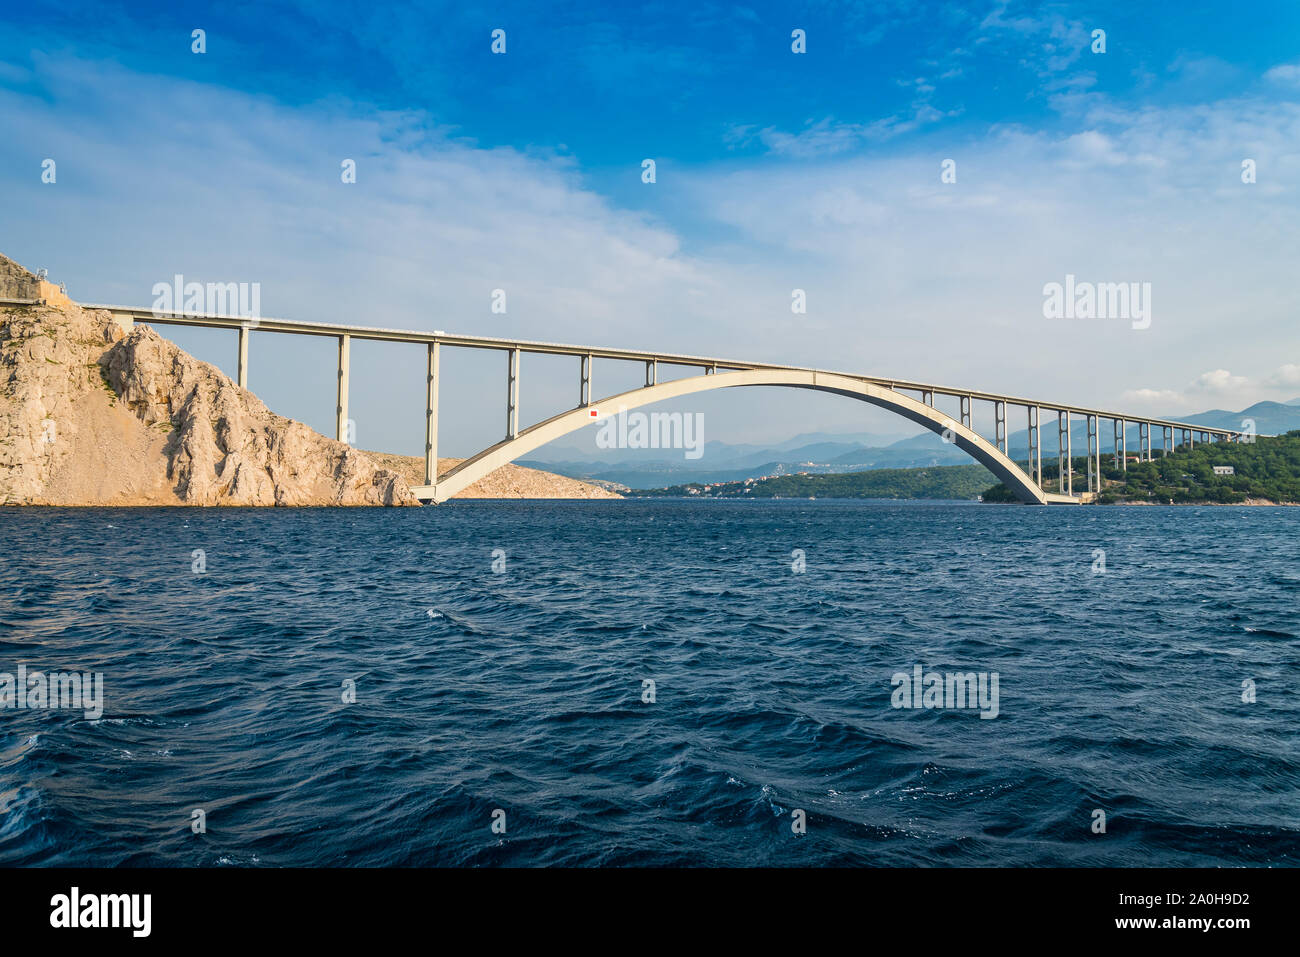 Brücke zur Insel Krk unter blauem Himmel an einem sonnigen Sommertag. Krk ist die größte Insel der Kroatischen Küste der Adria. Reisen Landschaft Stockfoto